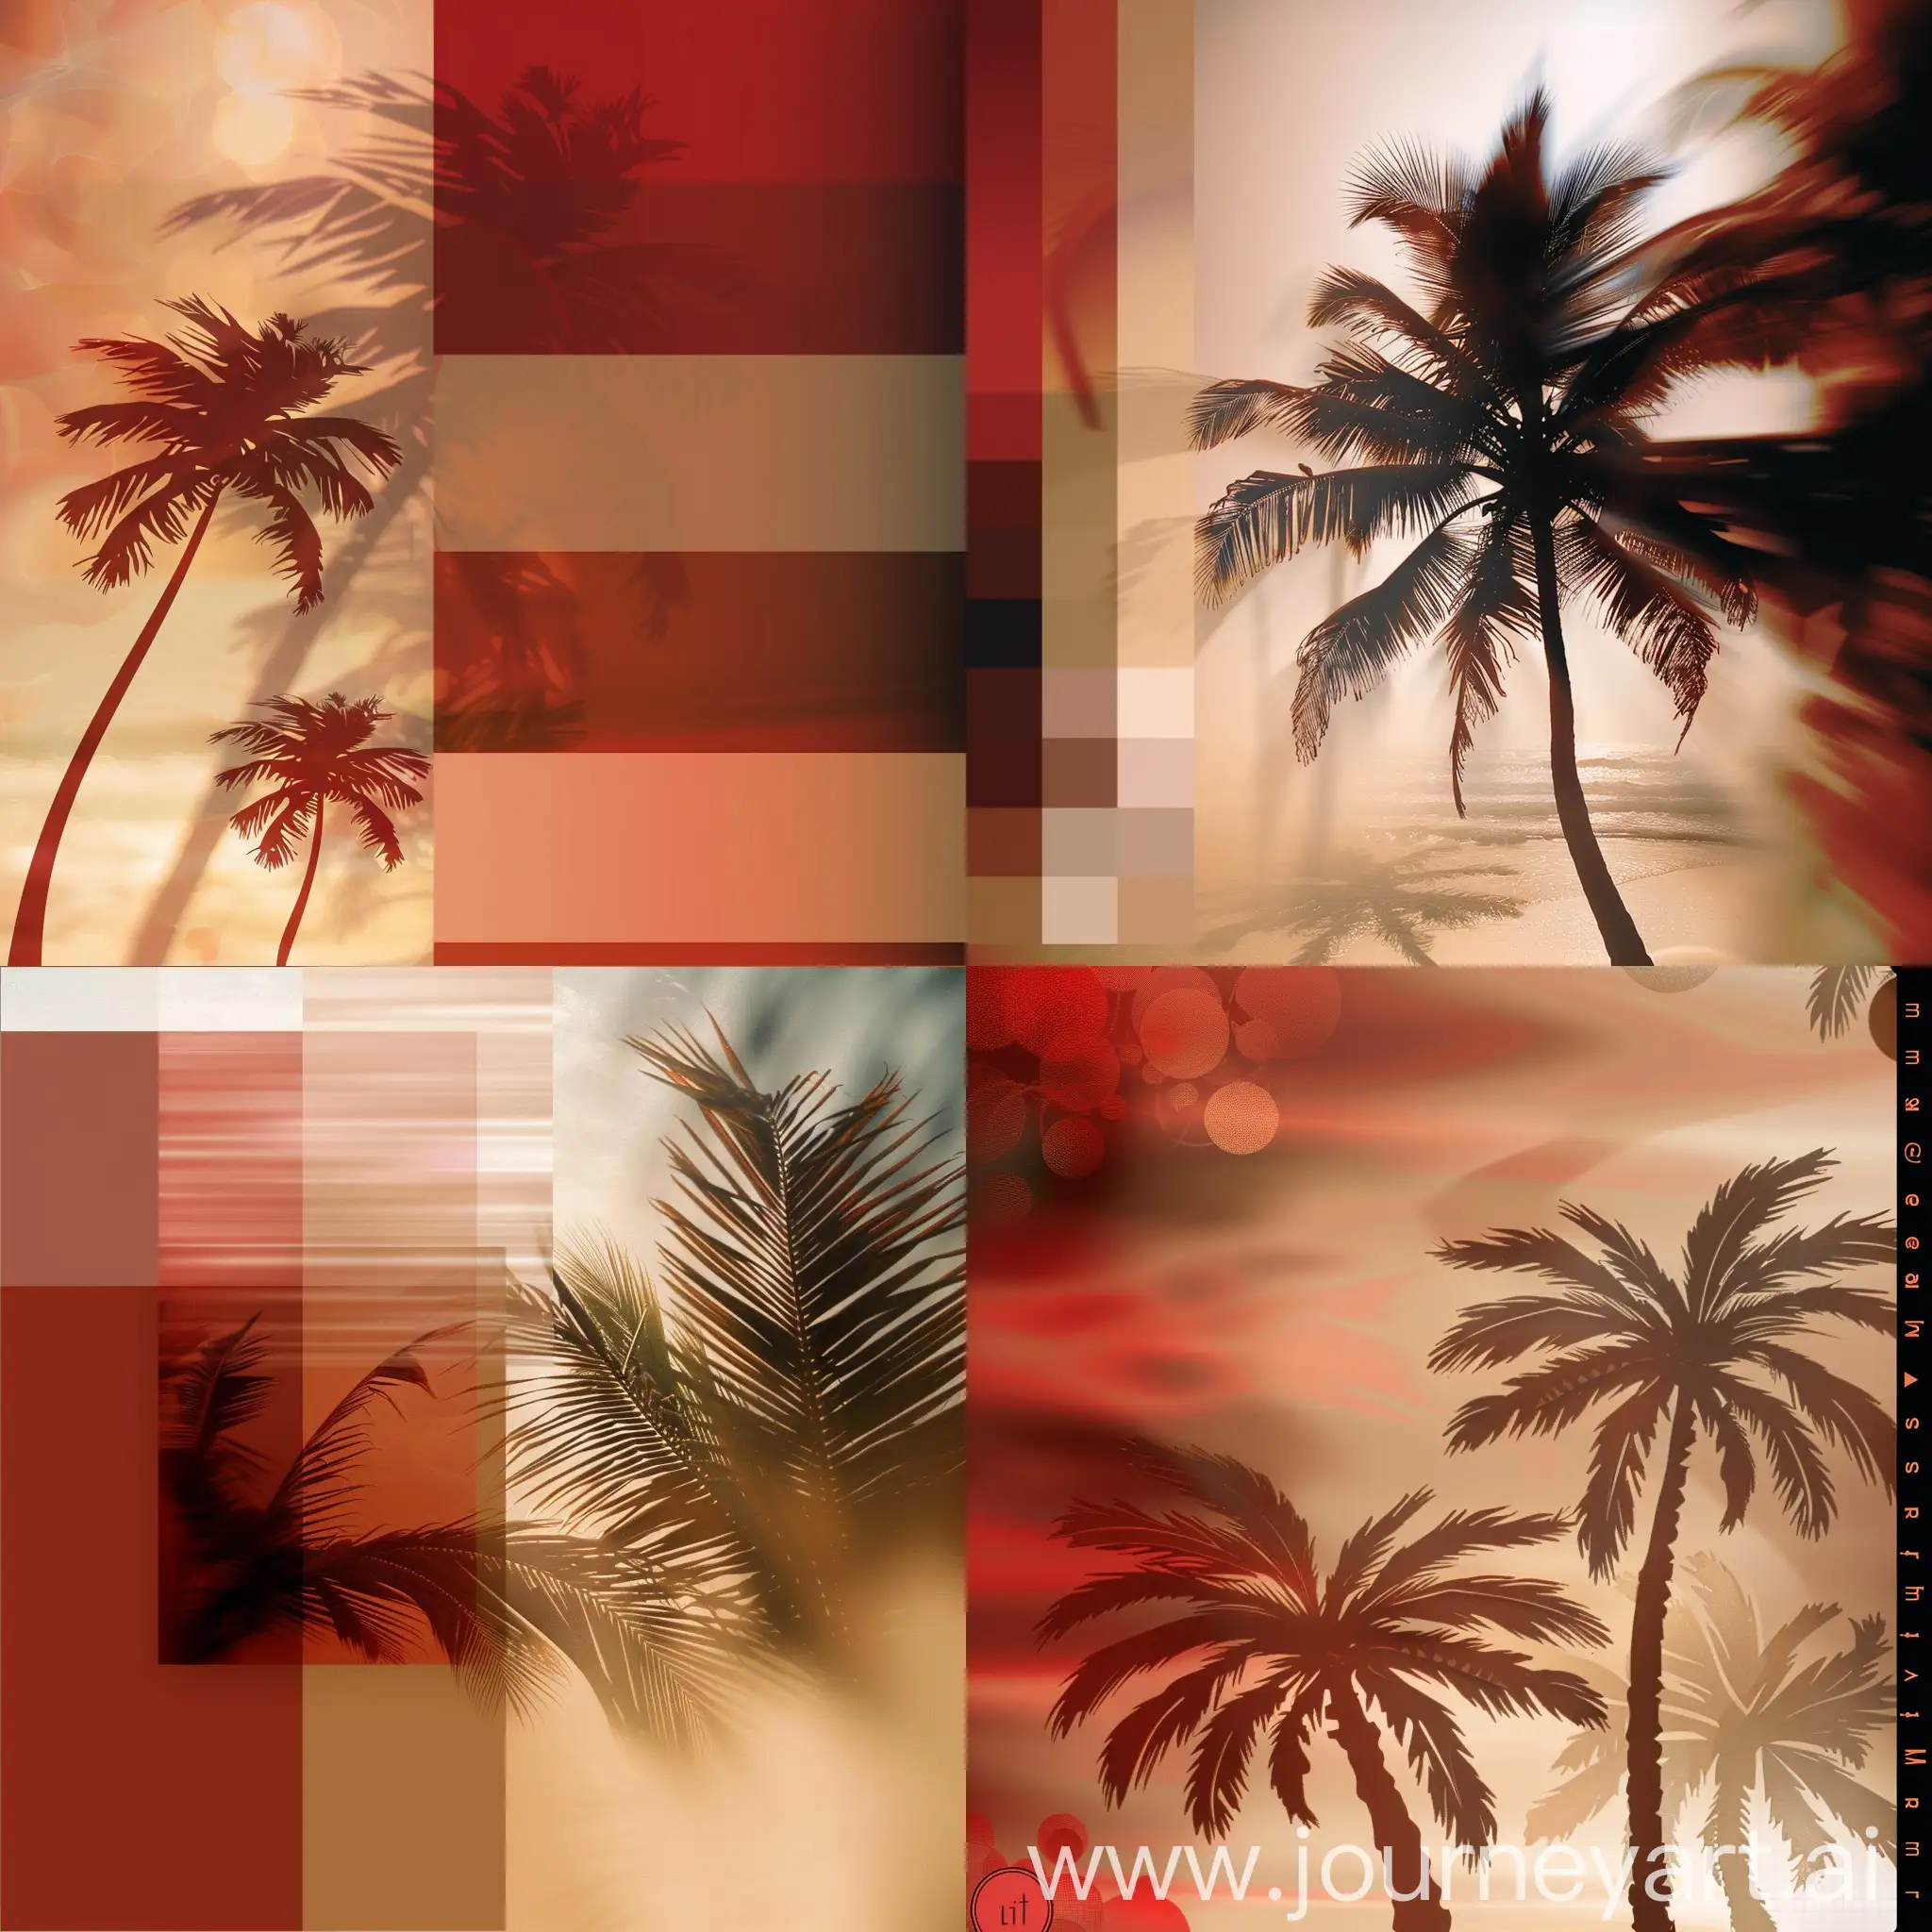 Genera un cover art para una inspirada en la playa, utiliza imágenes de fondo desenfocadas o una imagen panorámica, puedes utilizar stickers de palmeras o algún diseño de sombras de palmeras, la paleta de colores sería rojo, marrón, café y colores tierra